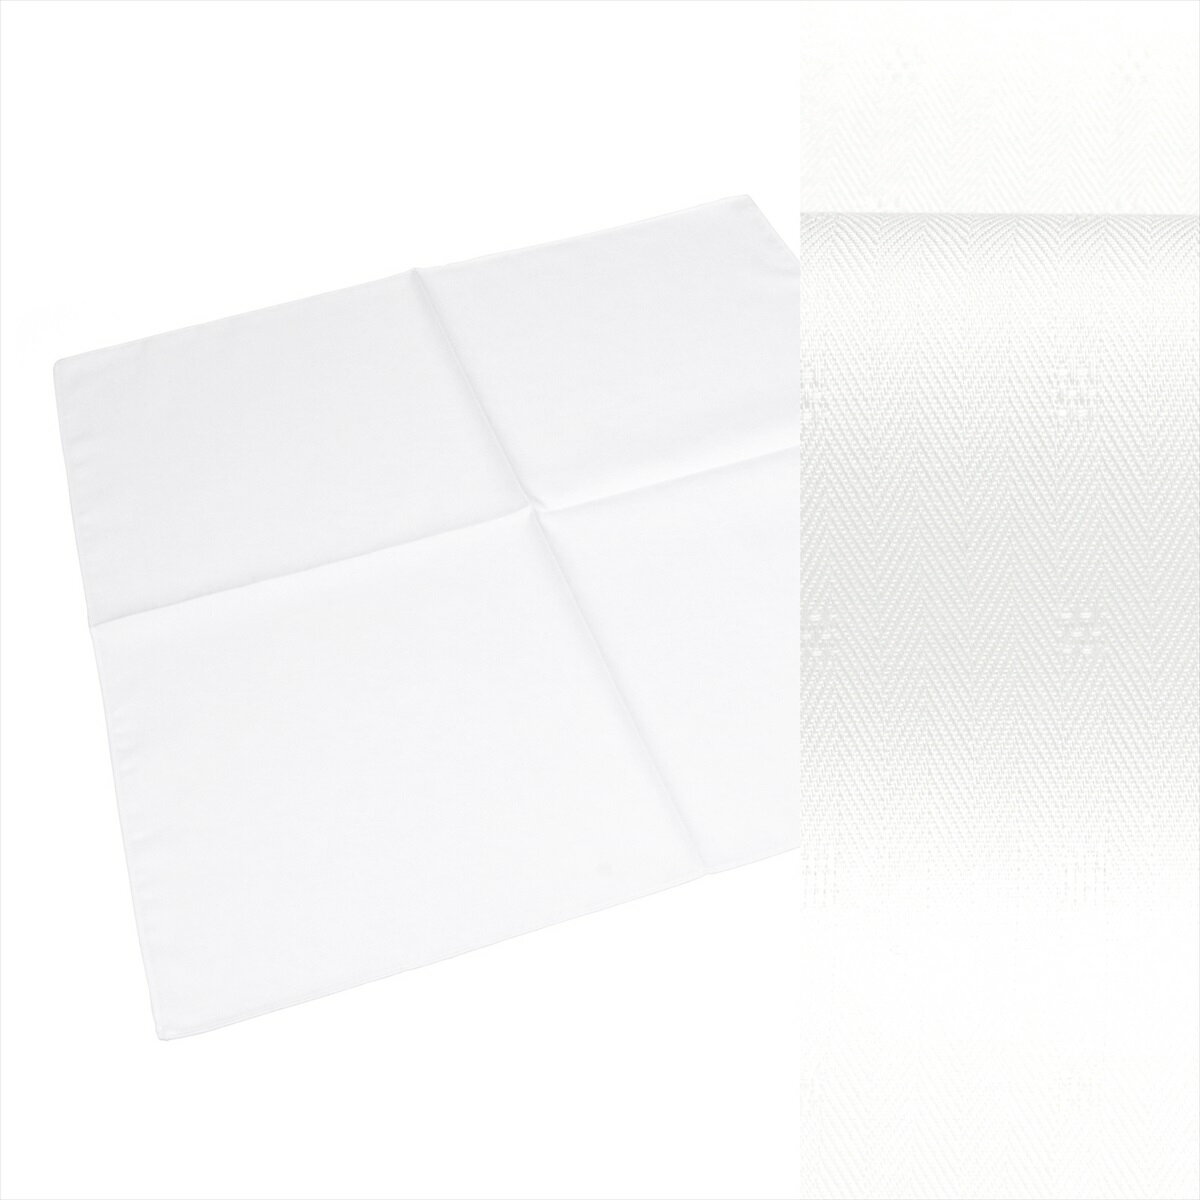 形態安定ハンカチーフ ハンカチ / メンズ / レディース / 日本製 綿100% 白系 小紋織柄